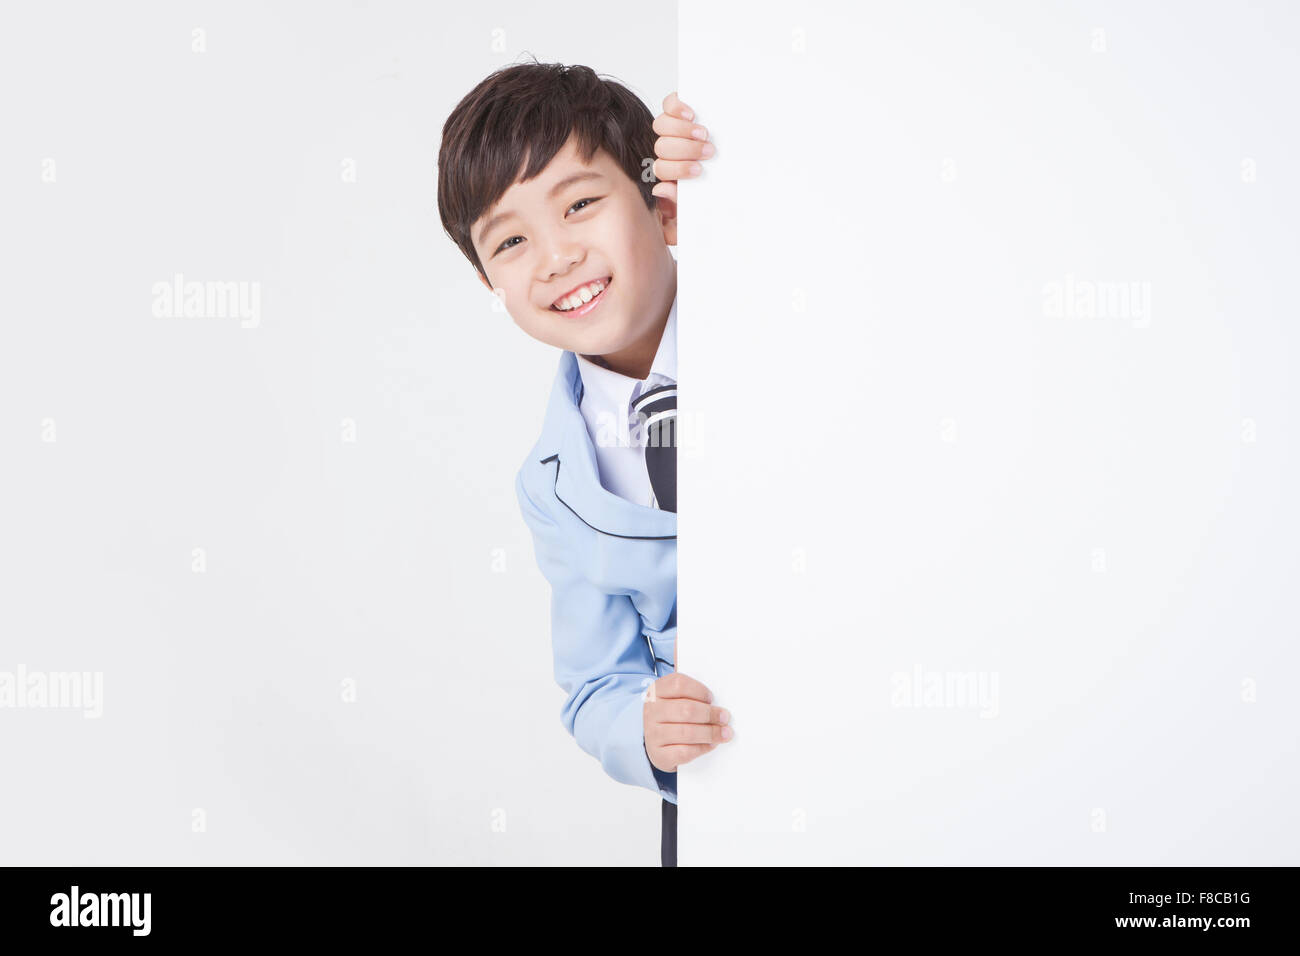 Niño en edad escolar uniformes escolares escondiéndose detrás de un espacio de copia en blanco y sonriente Foto de stock